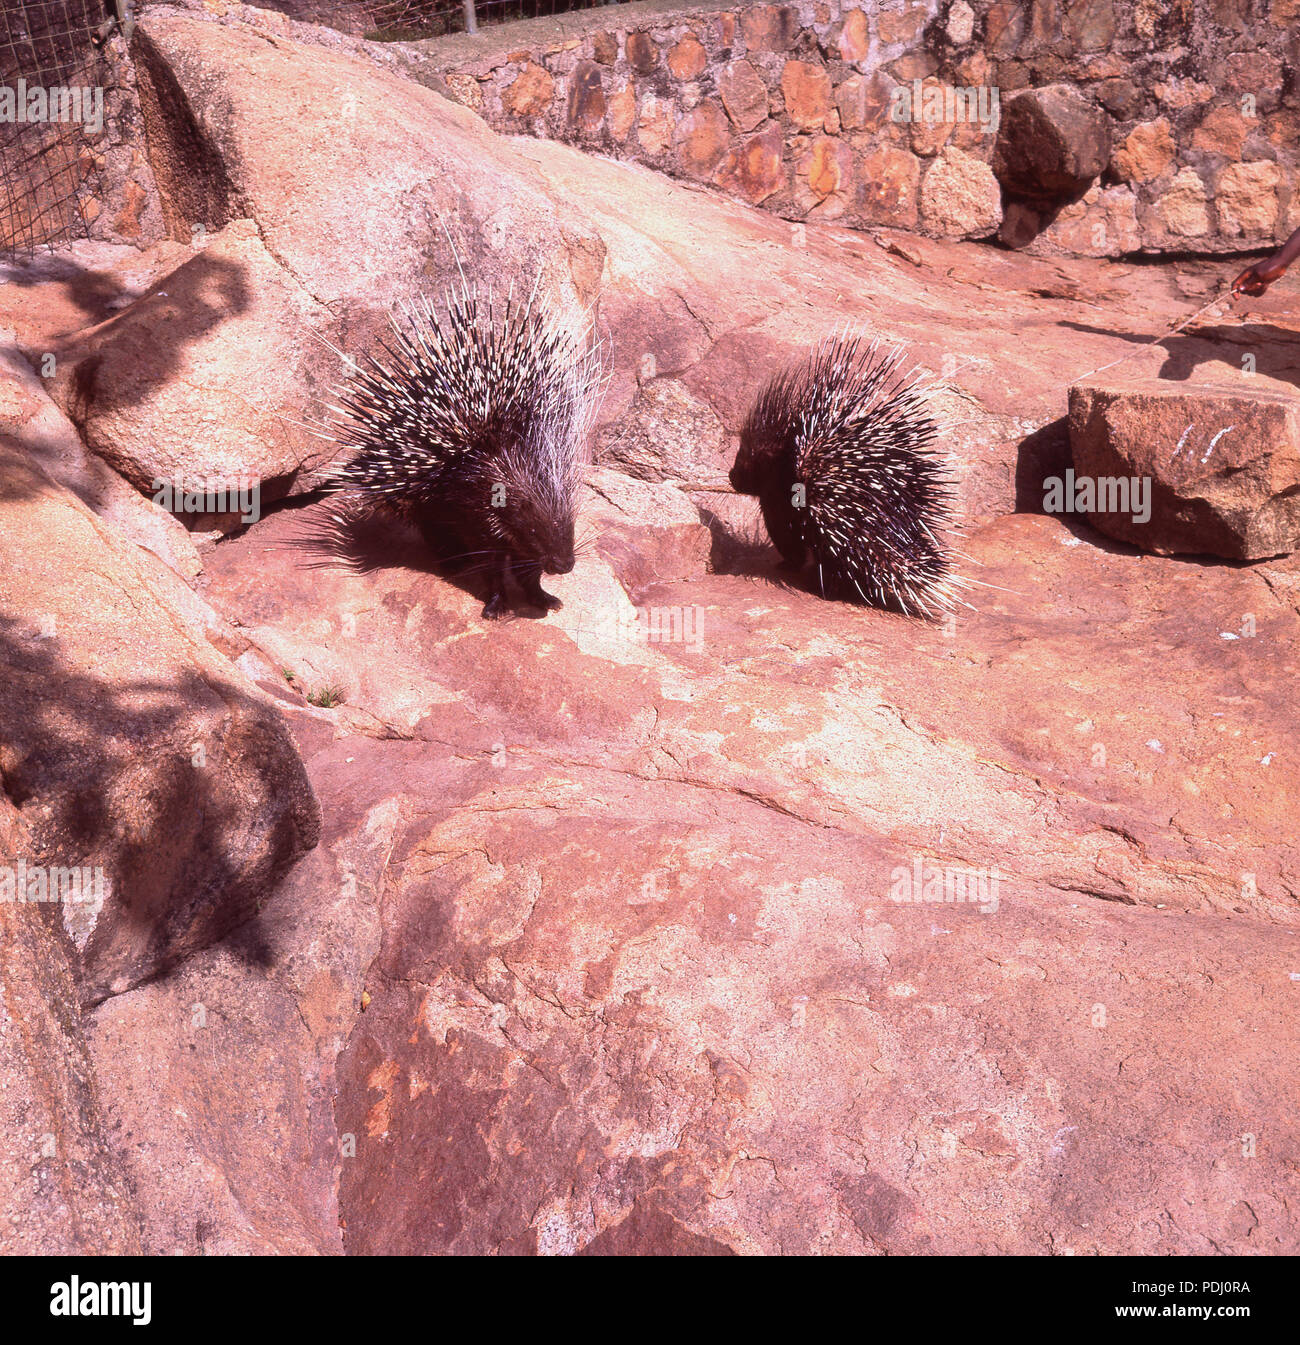 Anni sessanta, storico, estate e nel vecchio mondo istrici fuori sulle rocce in uno zoo. Questi grandi roditori hanno un cappotto di spine taglienti o dei piattelli per proteggere aginst predatori. Foto Stock